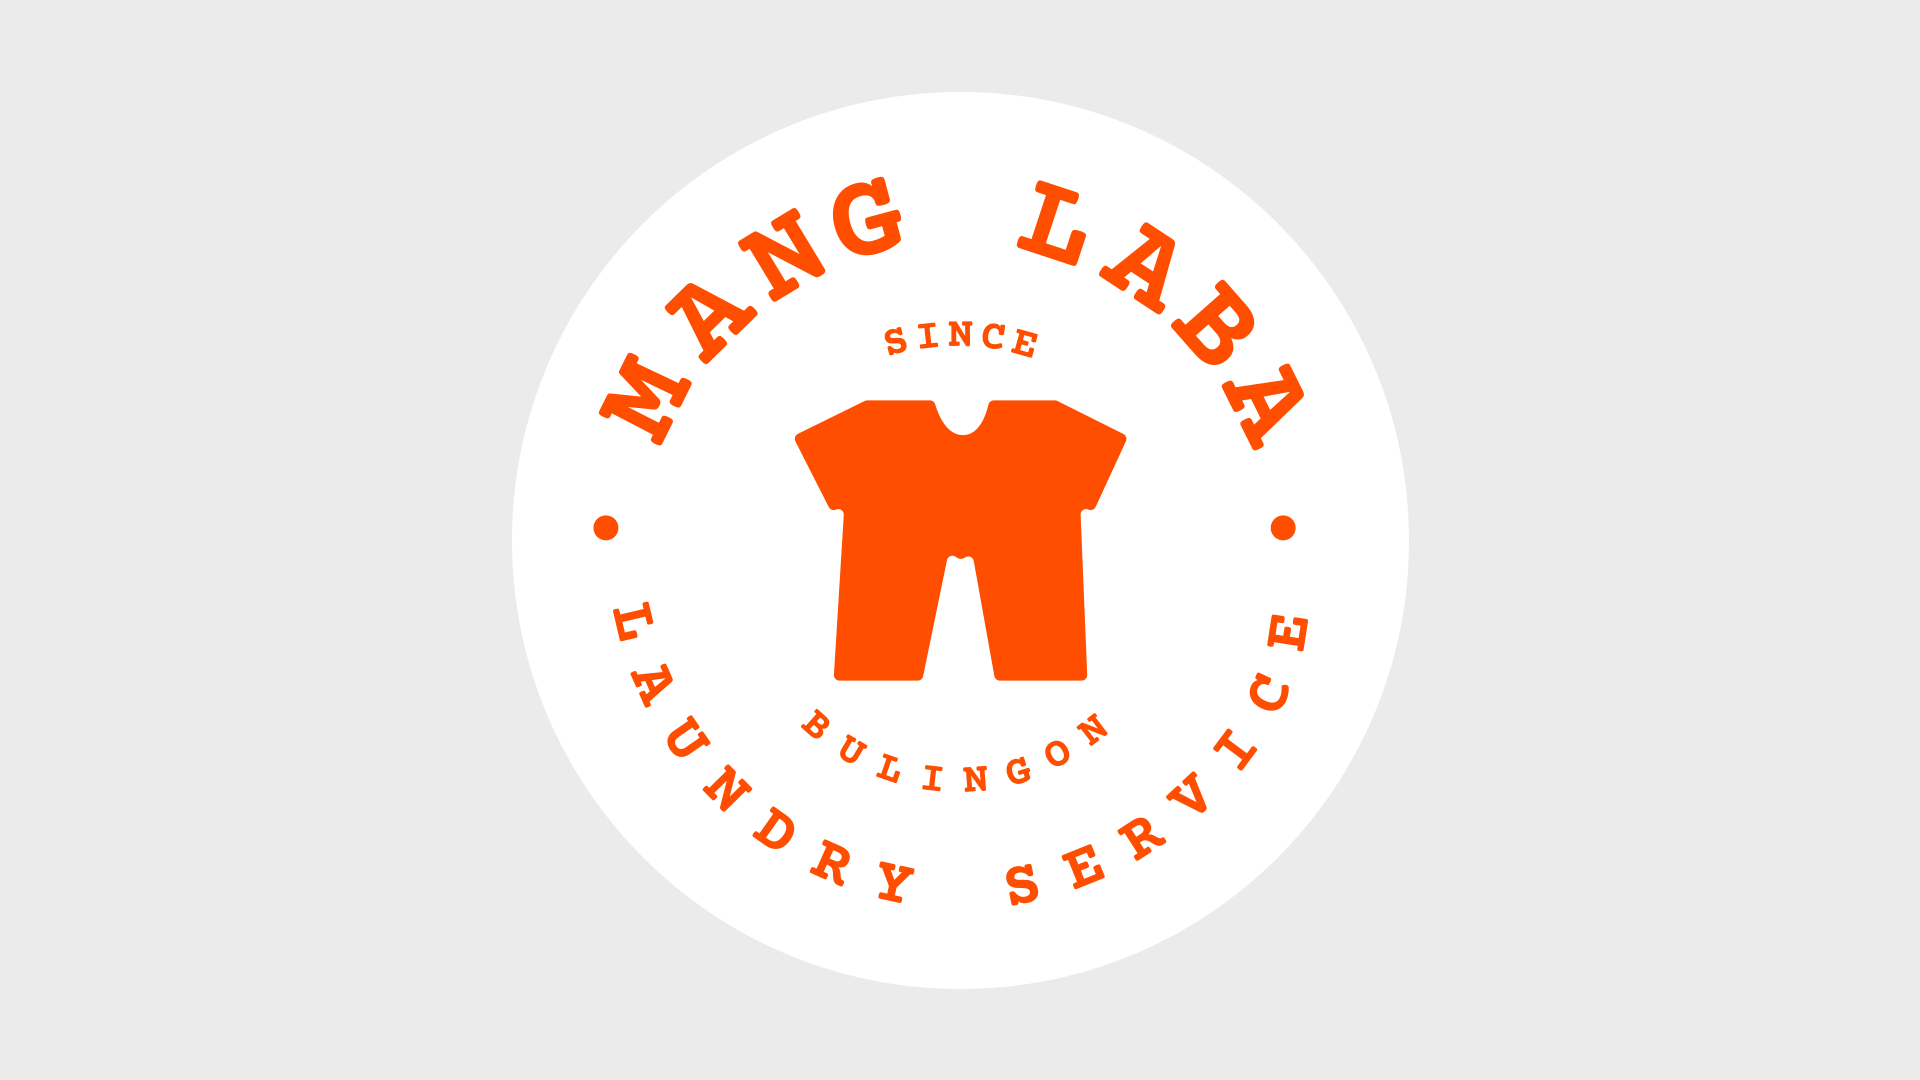 Manglaba Laundry Service - logo